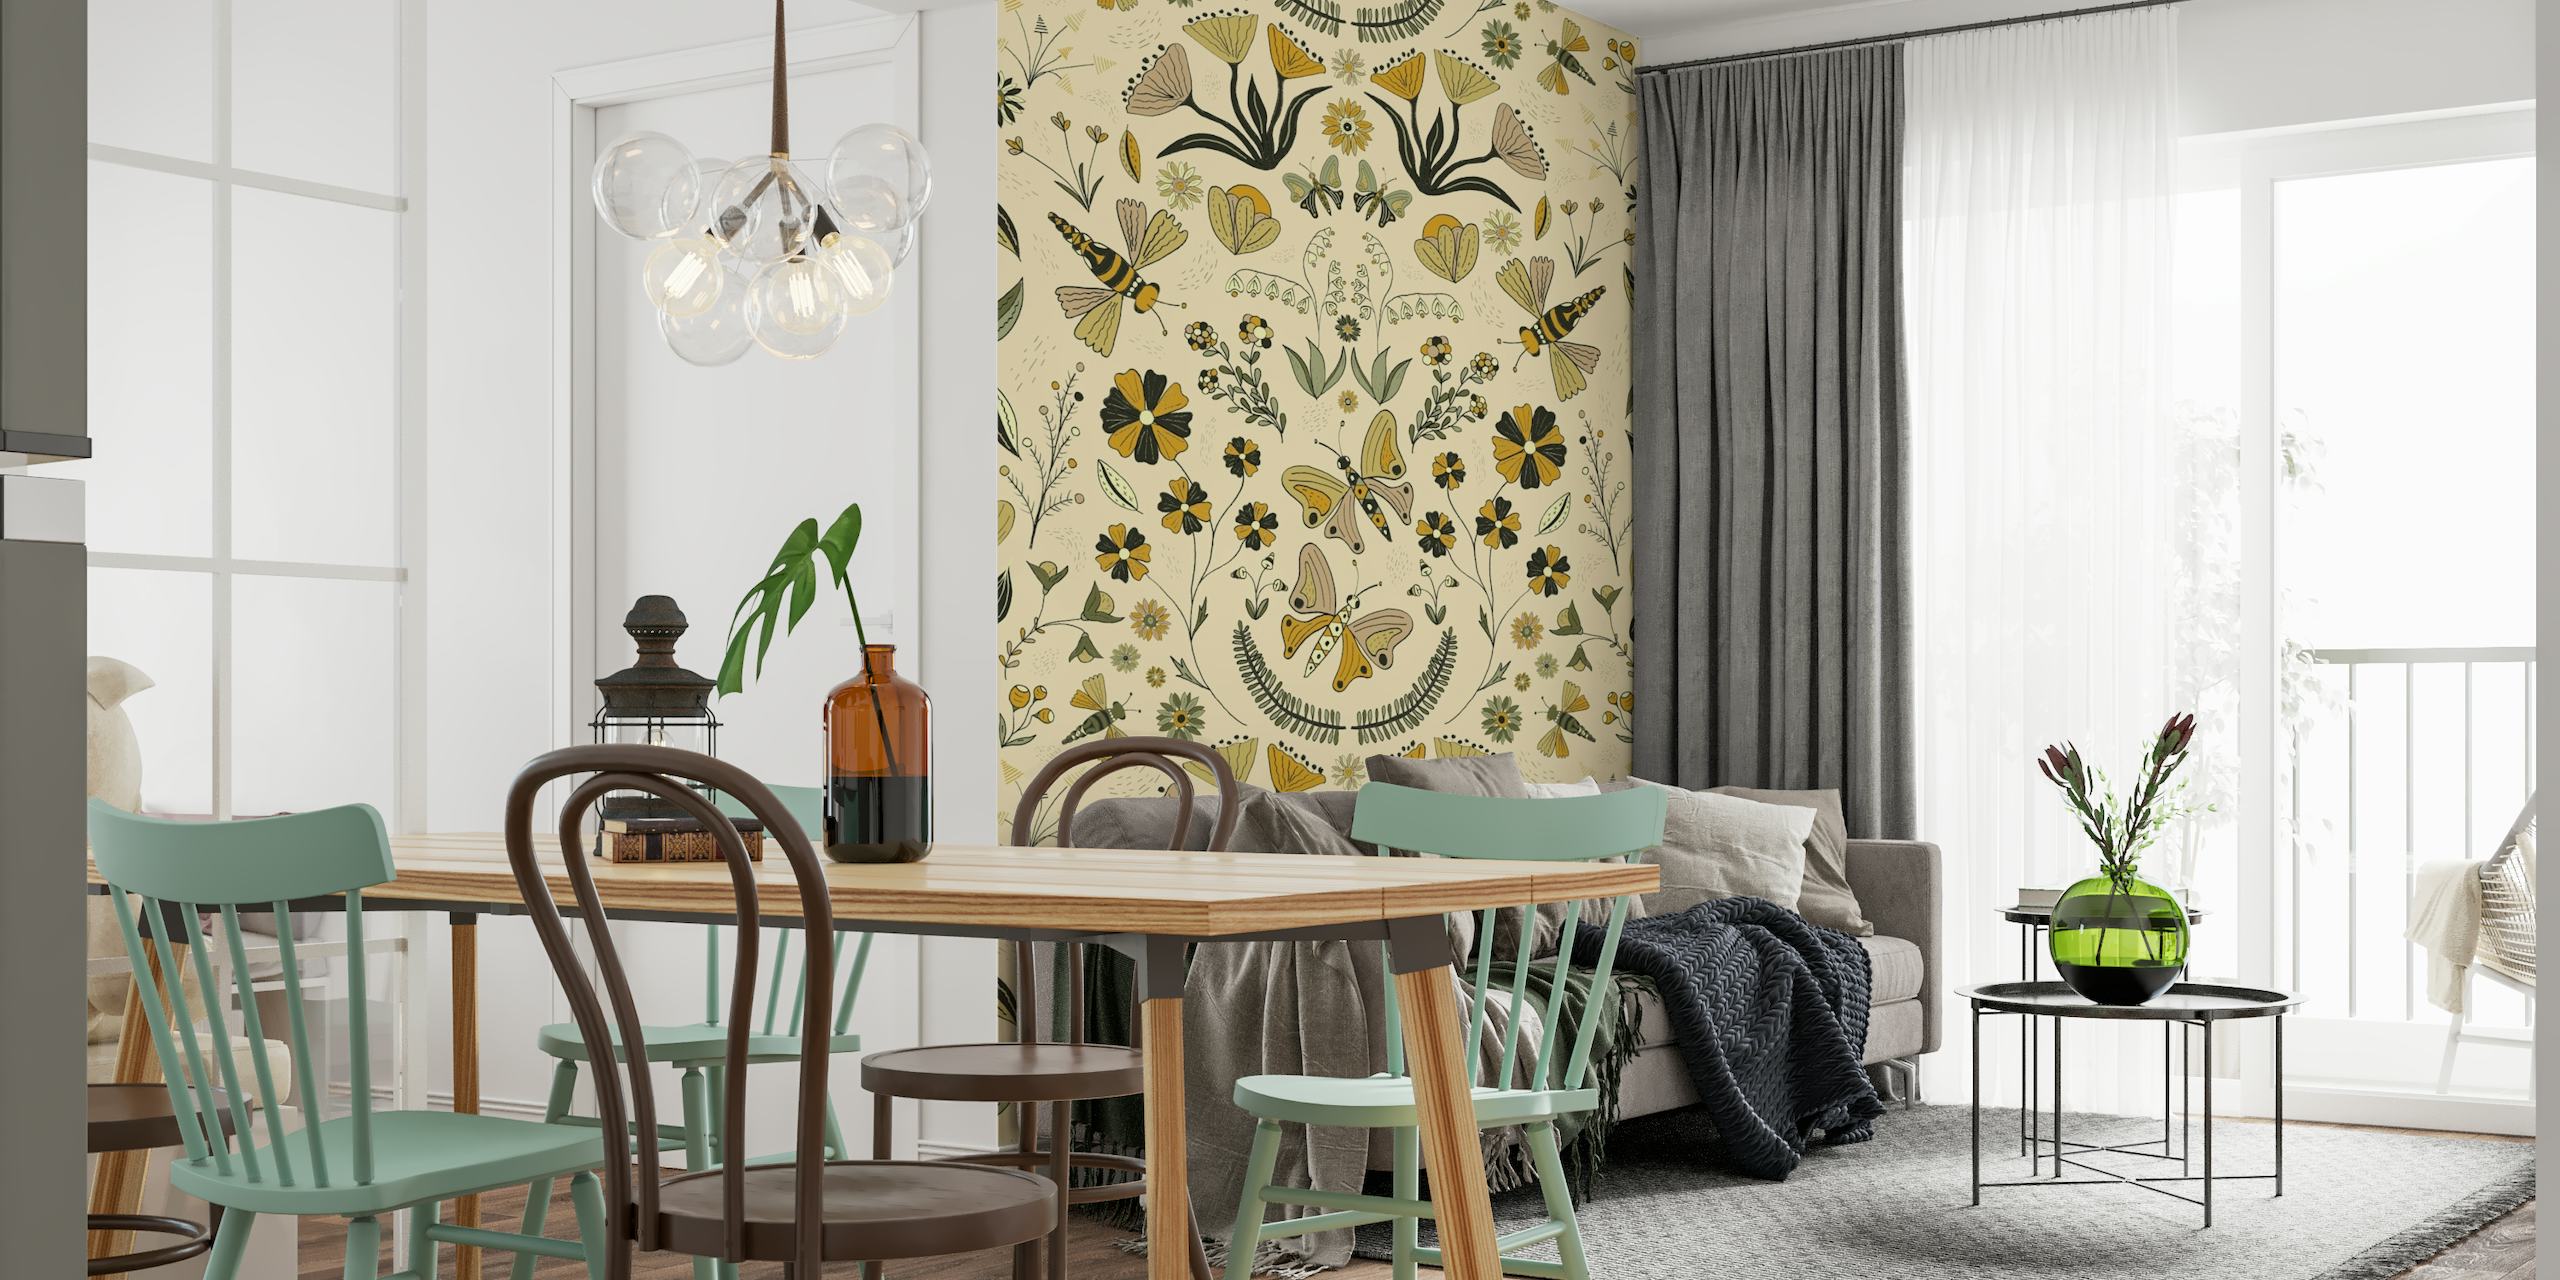 Illustrativt vægmaleri med et symmetrisk mønster af planter, sommerfugle og abstrakte dyr i havemiljø